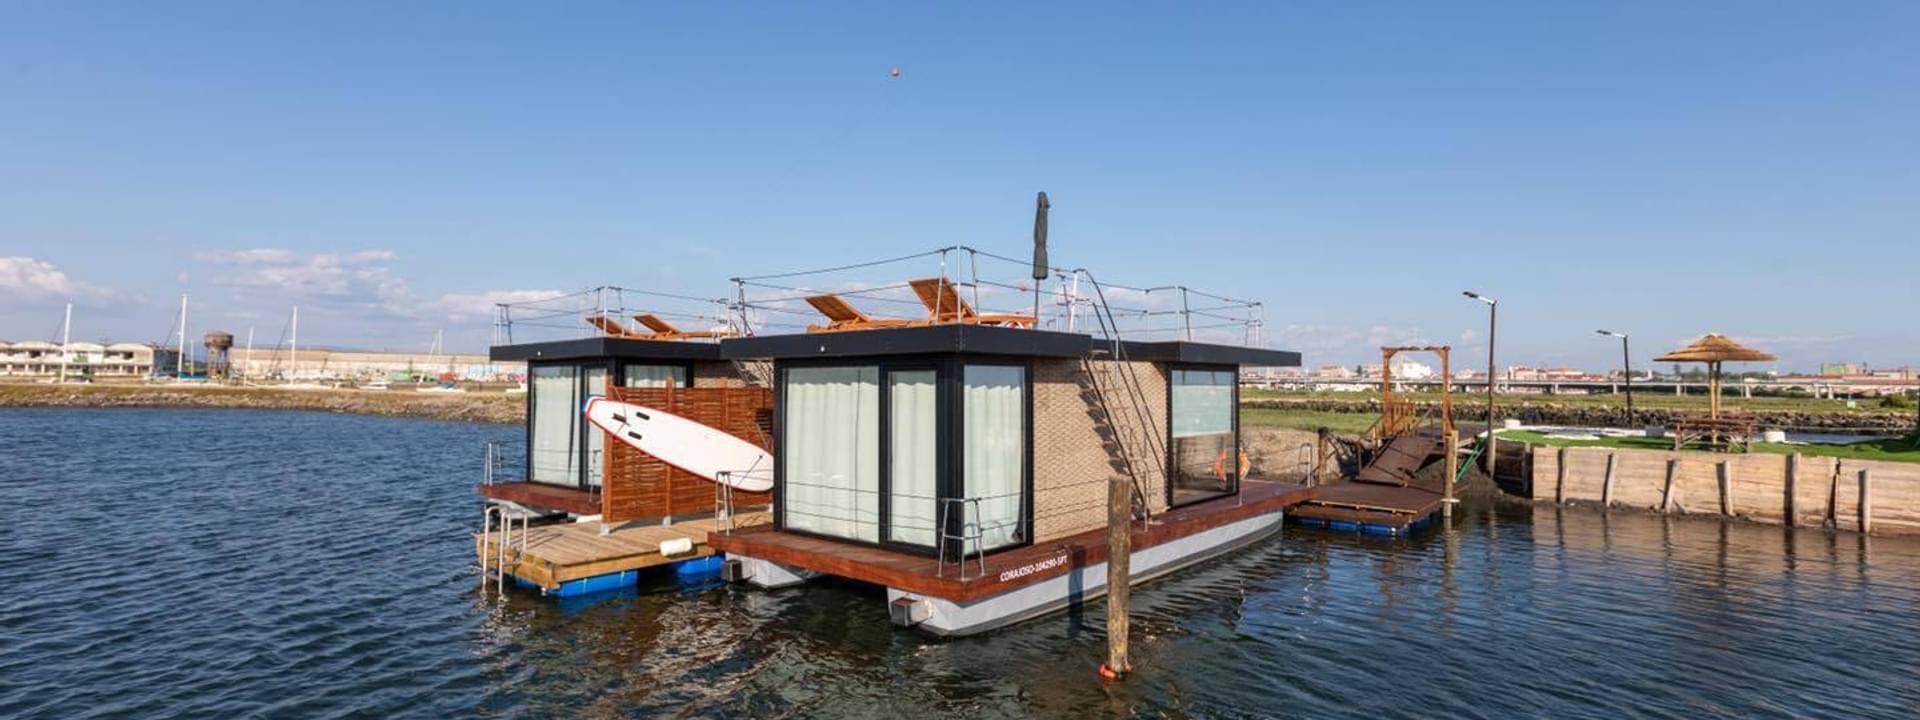 Barcos-casa by Ostraveiro